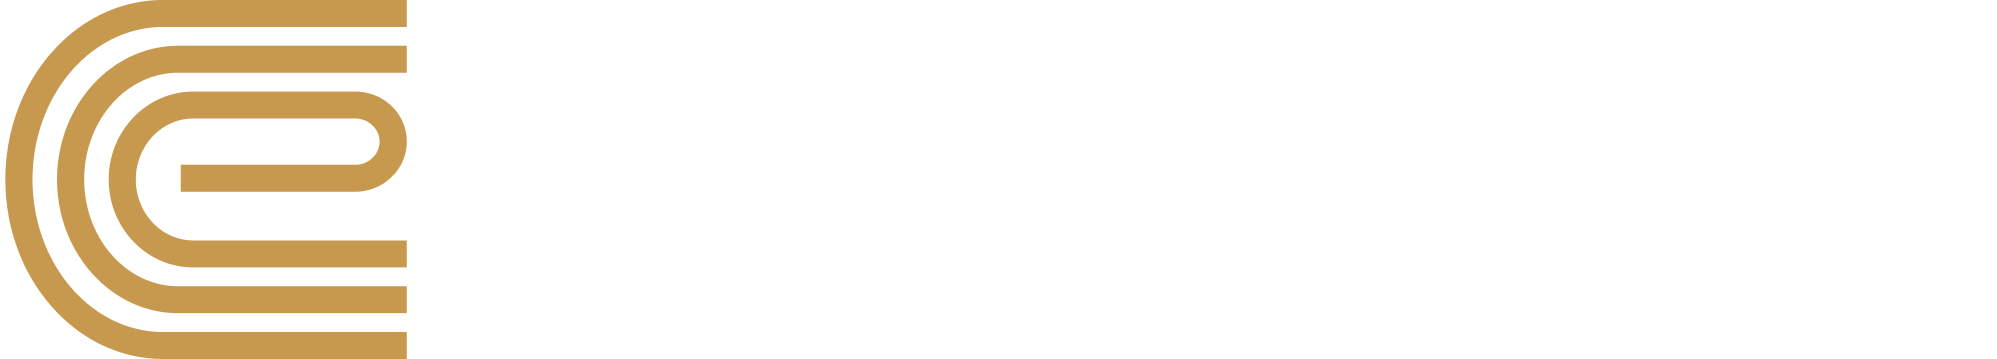 Malta Equidrome Logo